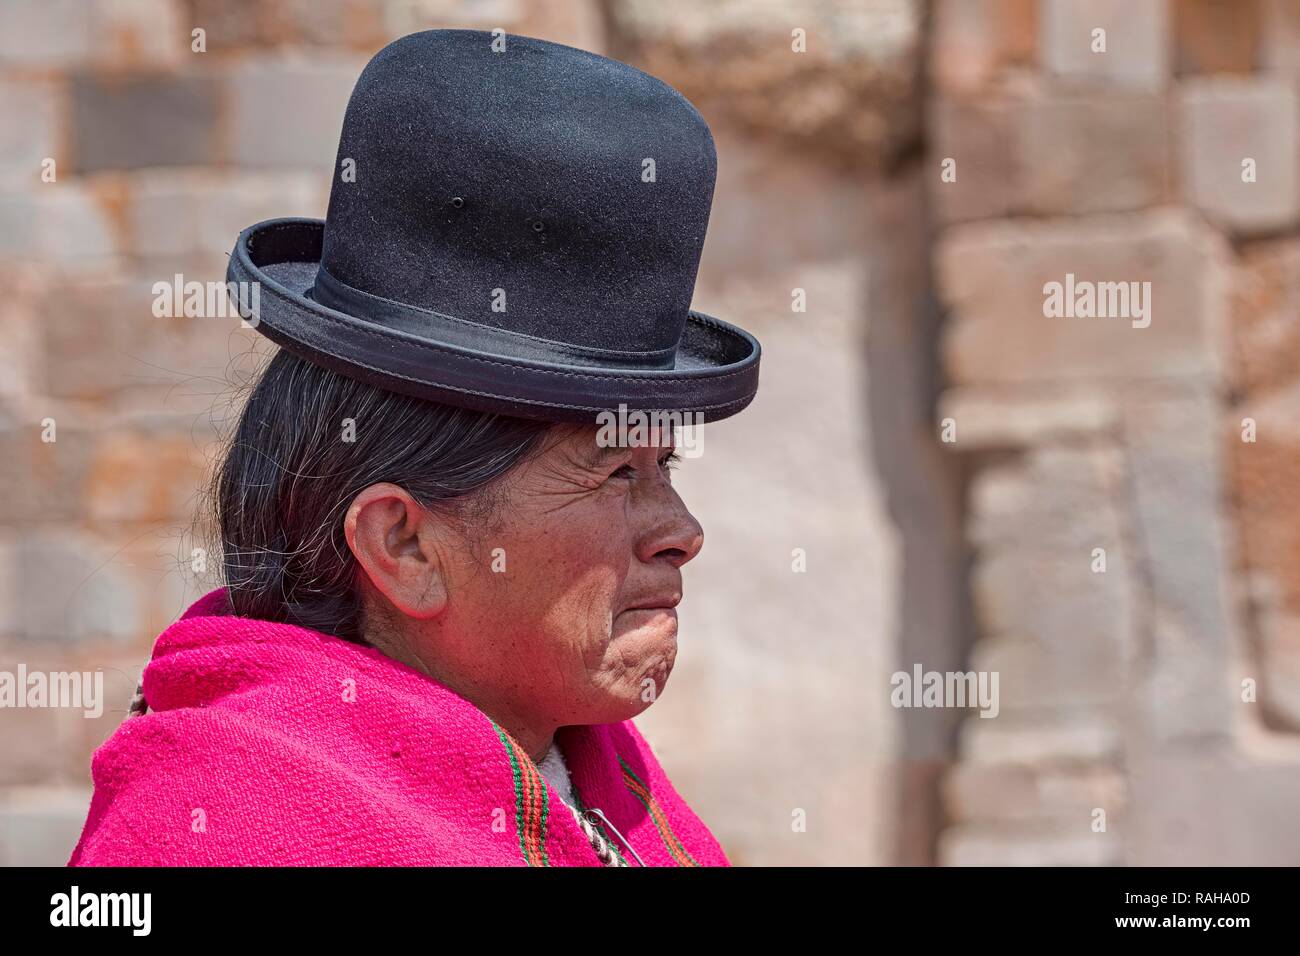 Mujer indígena (chola, cholita) en típicos trajes nacionales (pollera, overskirt y bufanda, manta) con sombrero típico (melón Foto de stock